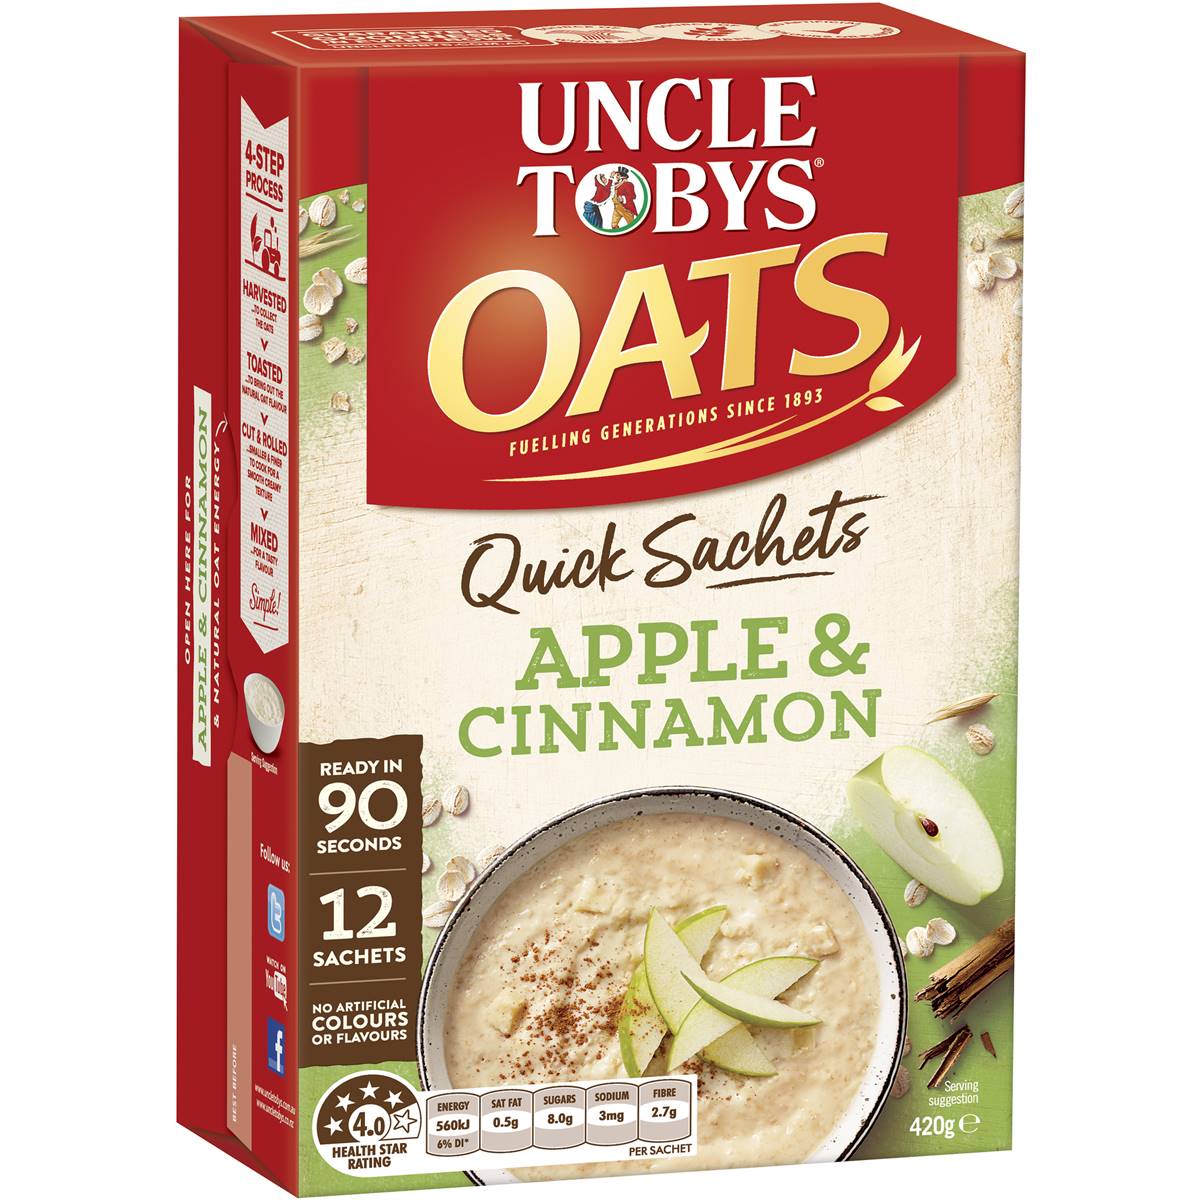 Uncle Tobys Oats Quick Sachets Apple & Cinnamon Porridge